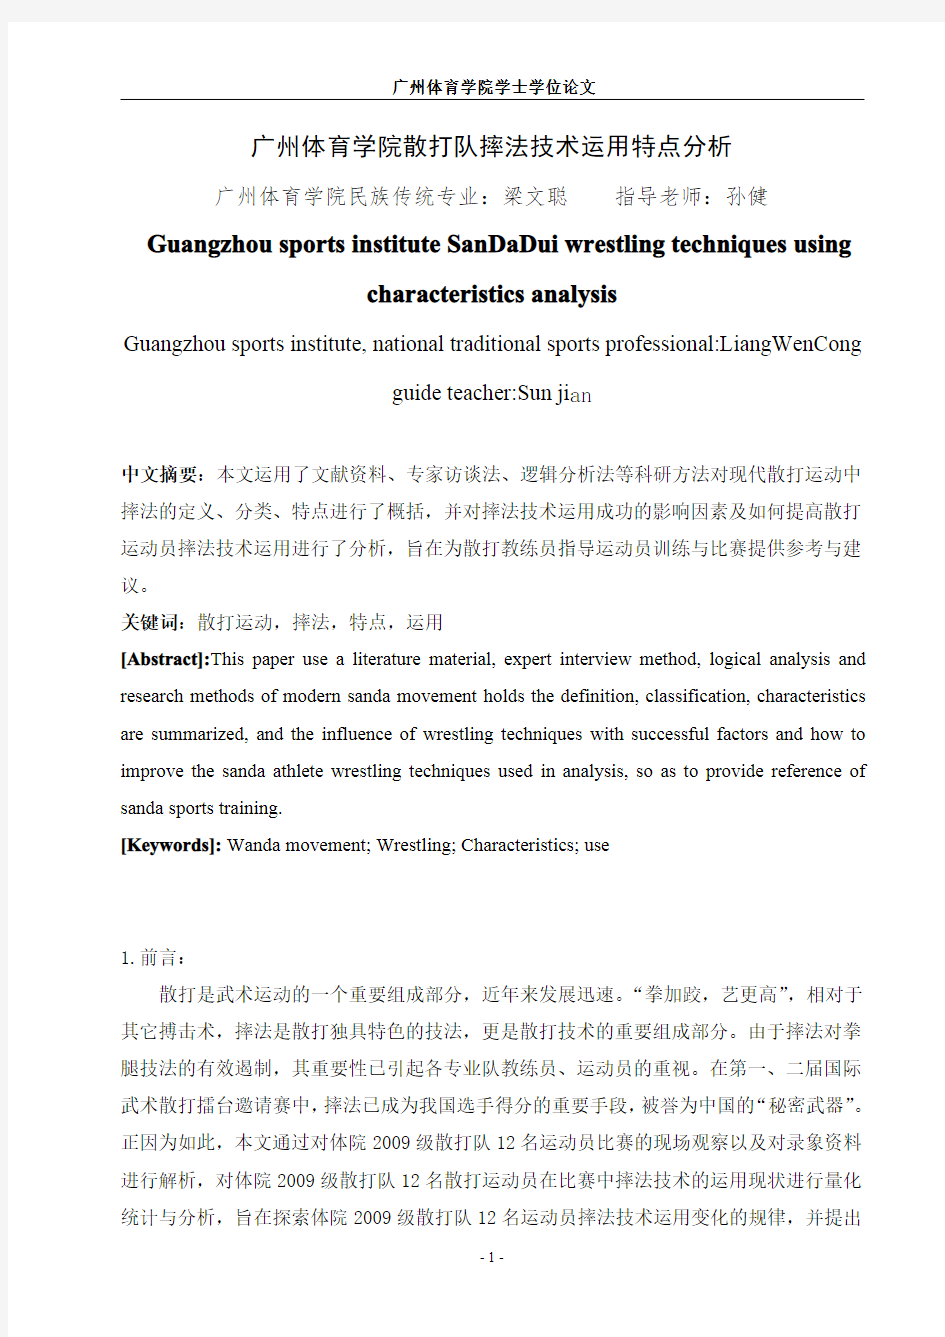 广州体育学院散打队摔法技术运用特点分析